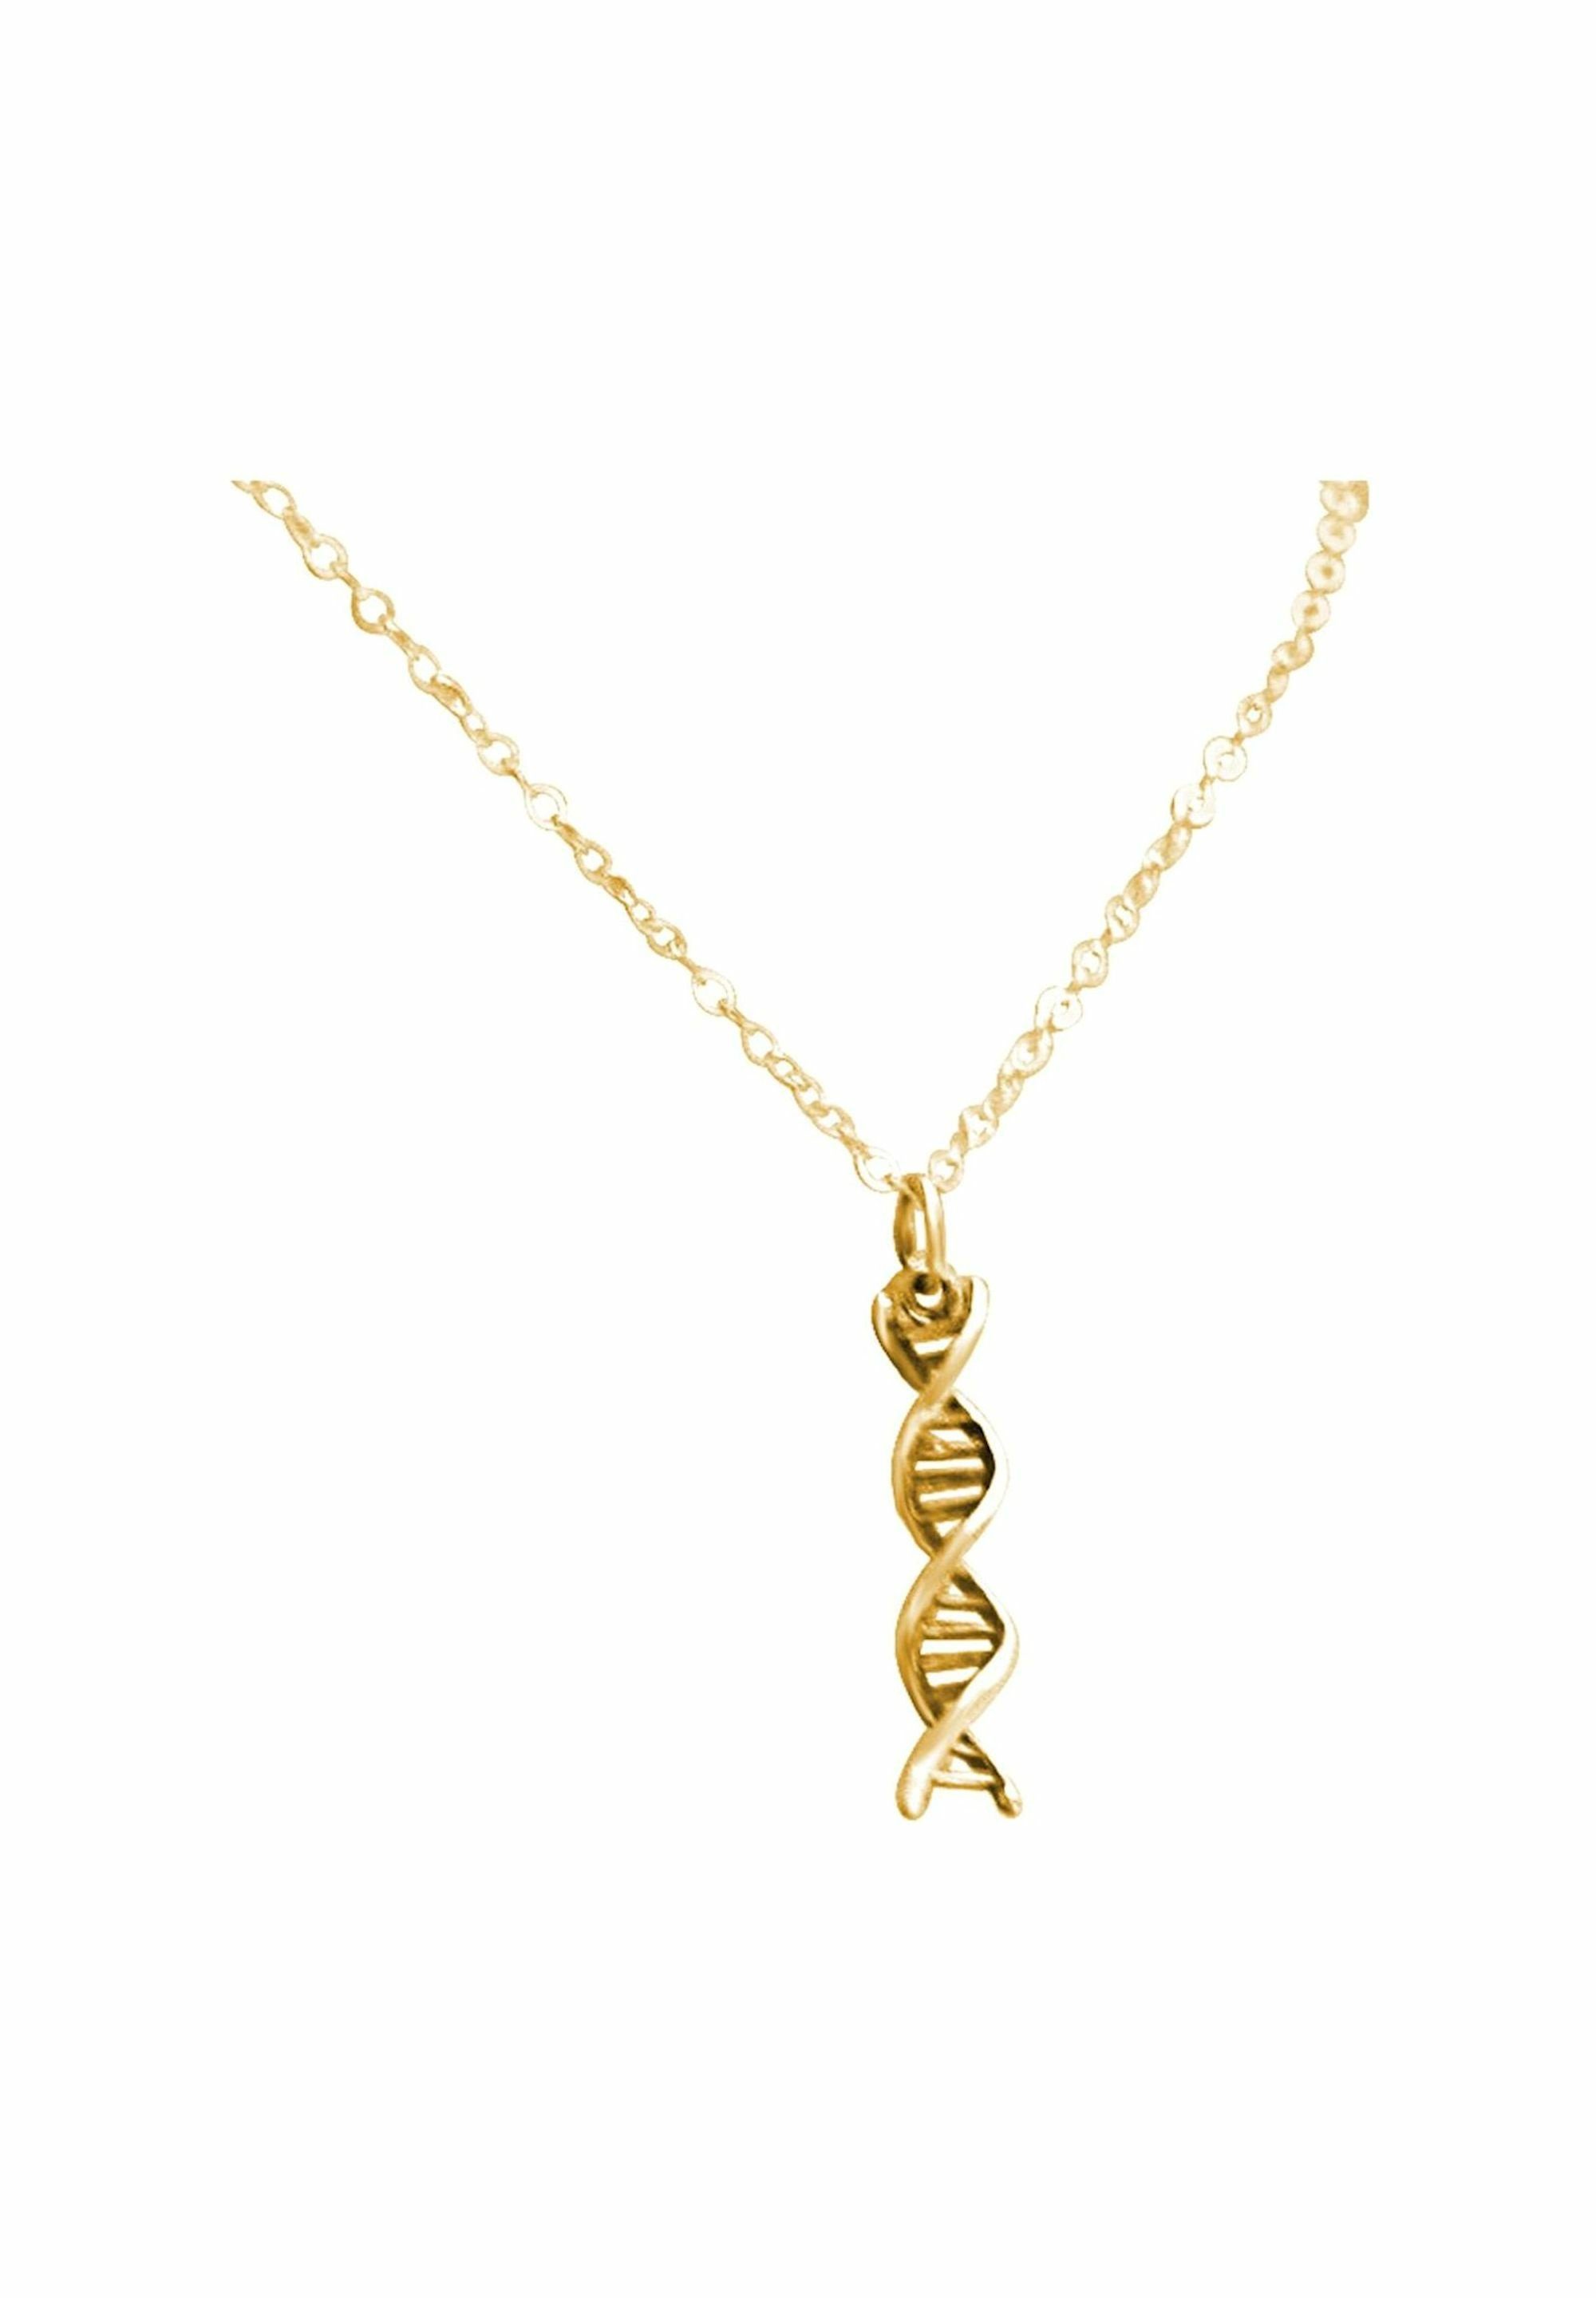 Gemshine gold coloured Helix mit Doppelt Molekül Kette Anhänger DNA Spiral